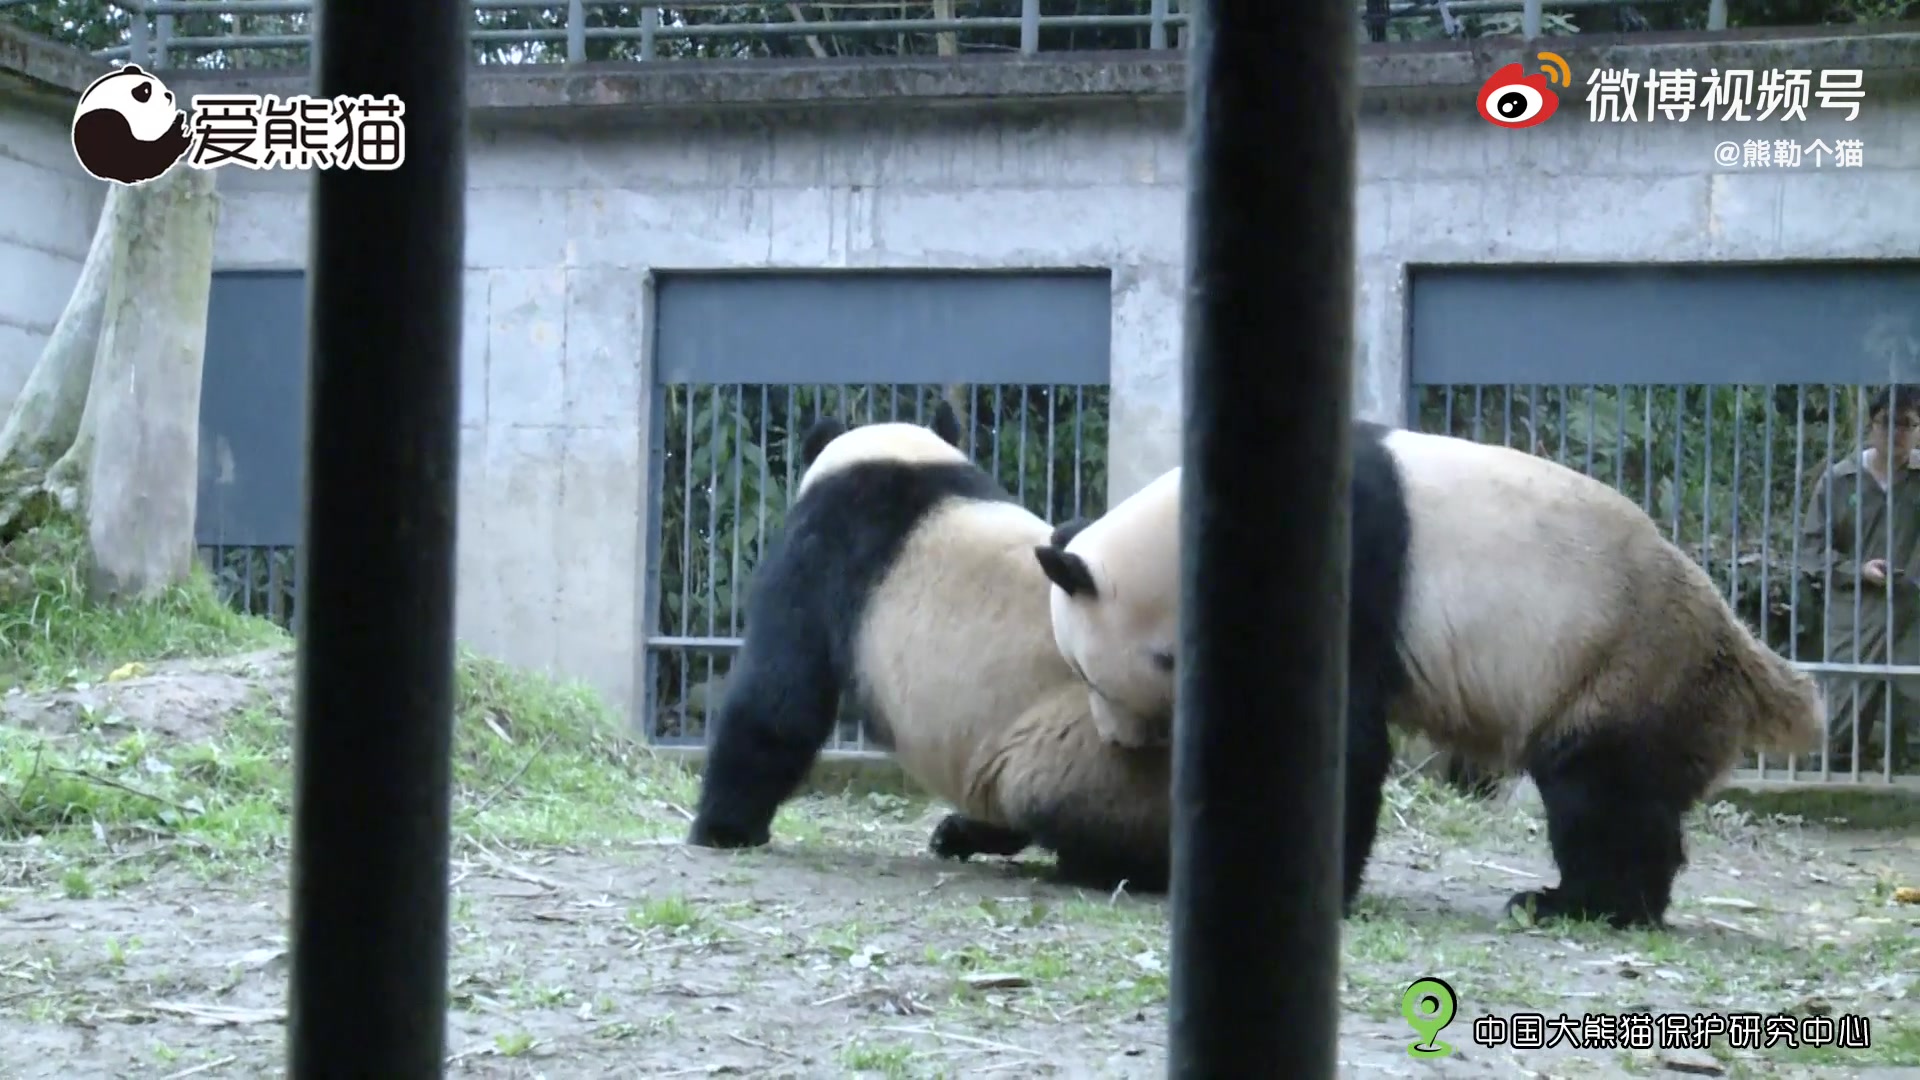 这个视频记录的是雌性大熊猫林冰和武岗在相亲时发生的故事